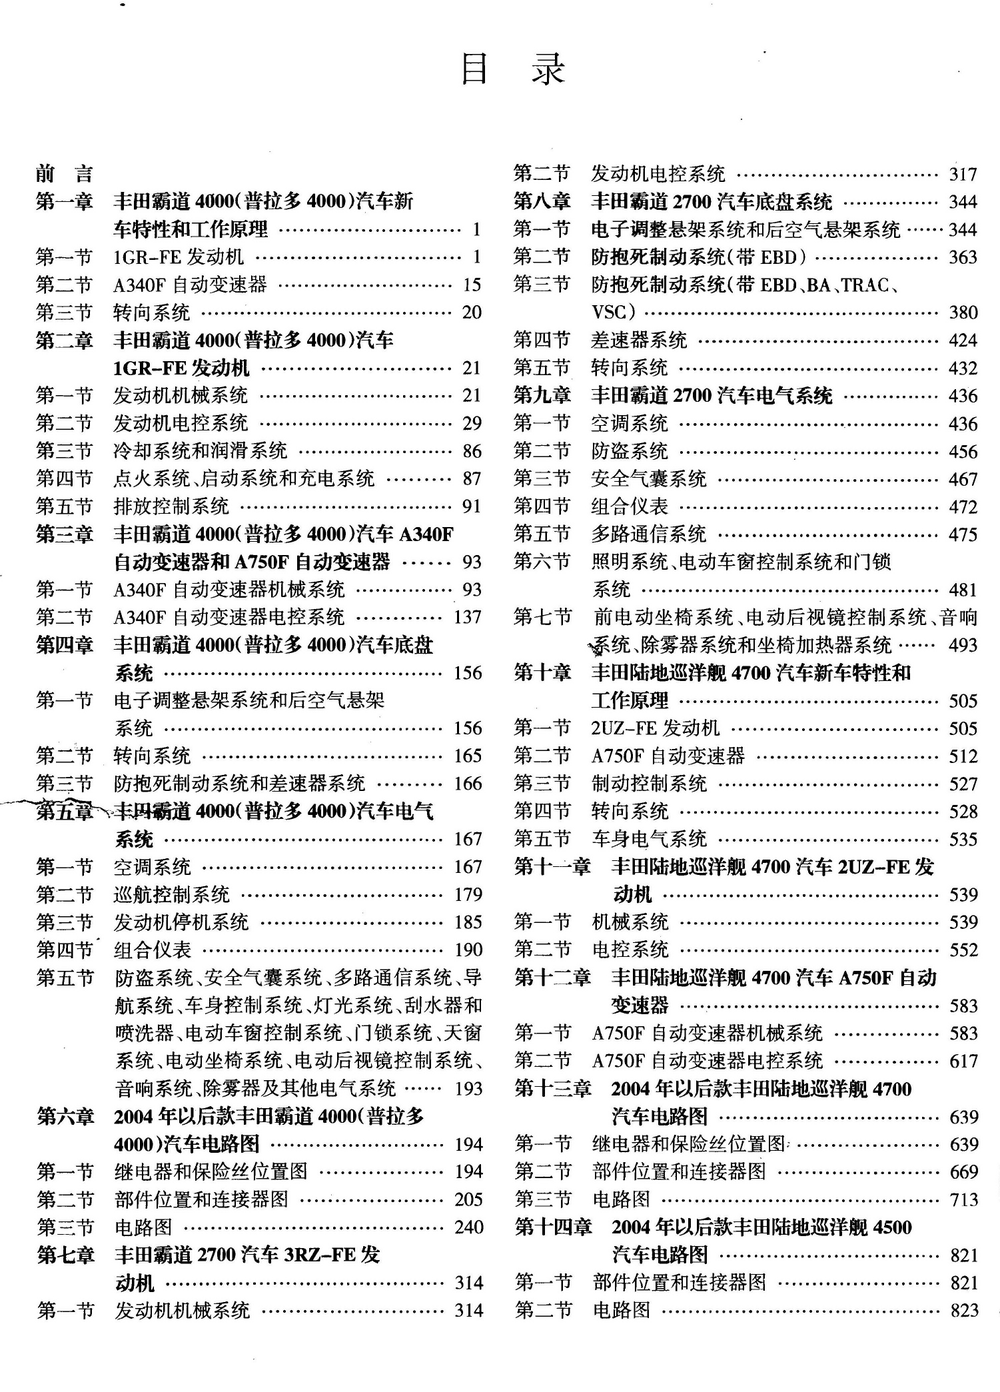 丰田霸道4000和陆地巡洋舰4700汽车维修手册 完全版 (2).pdf-第1页.png